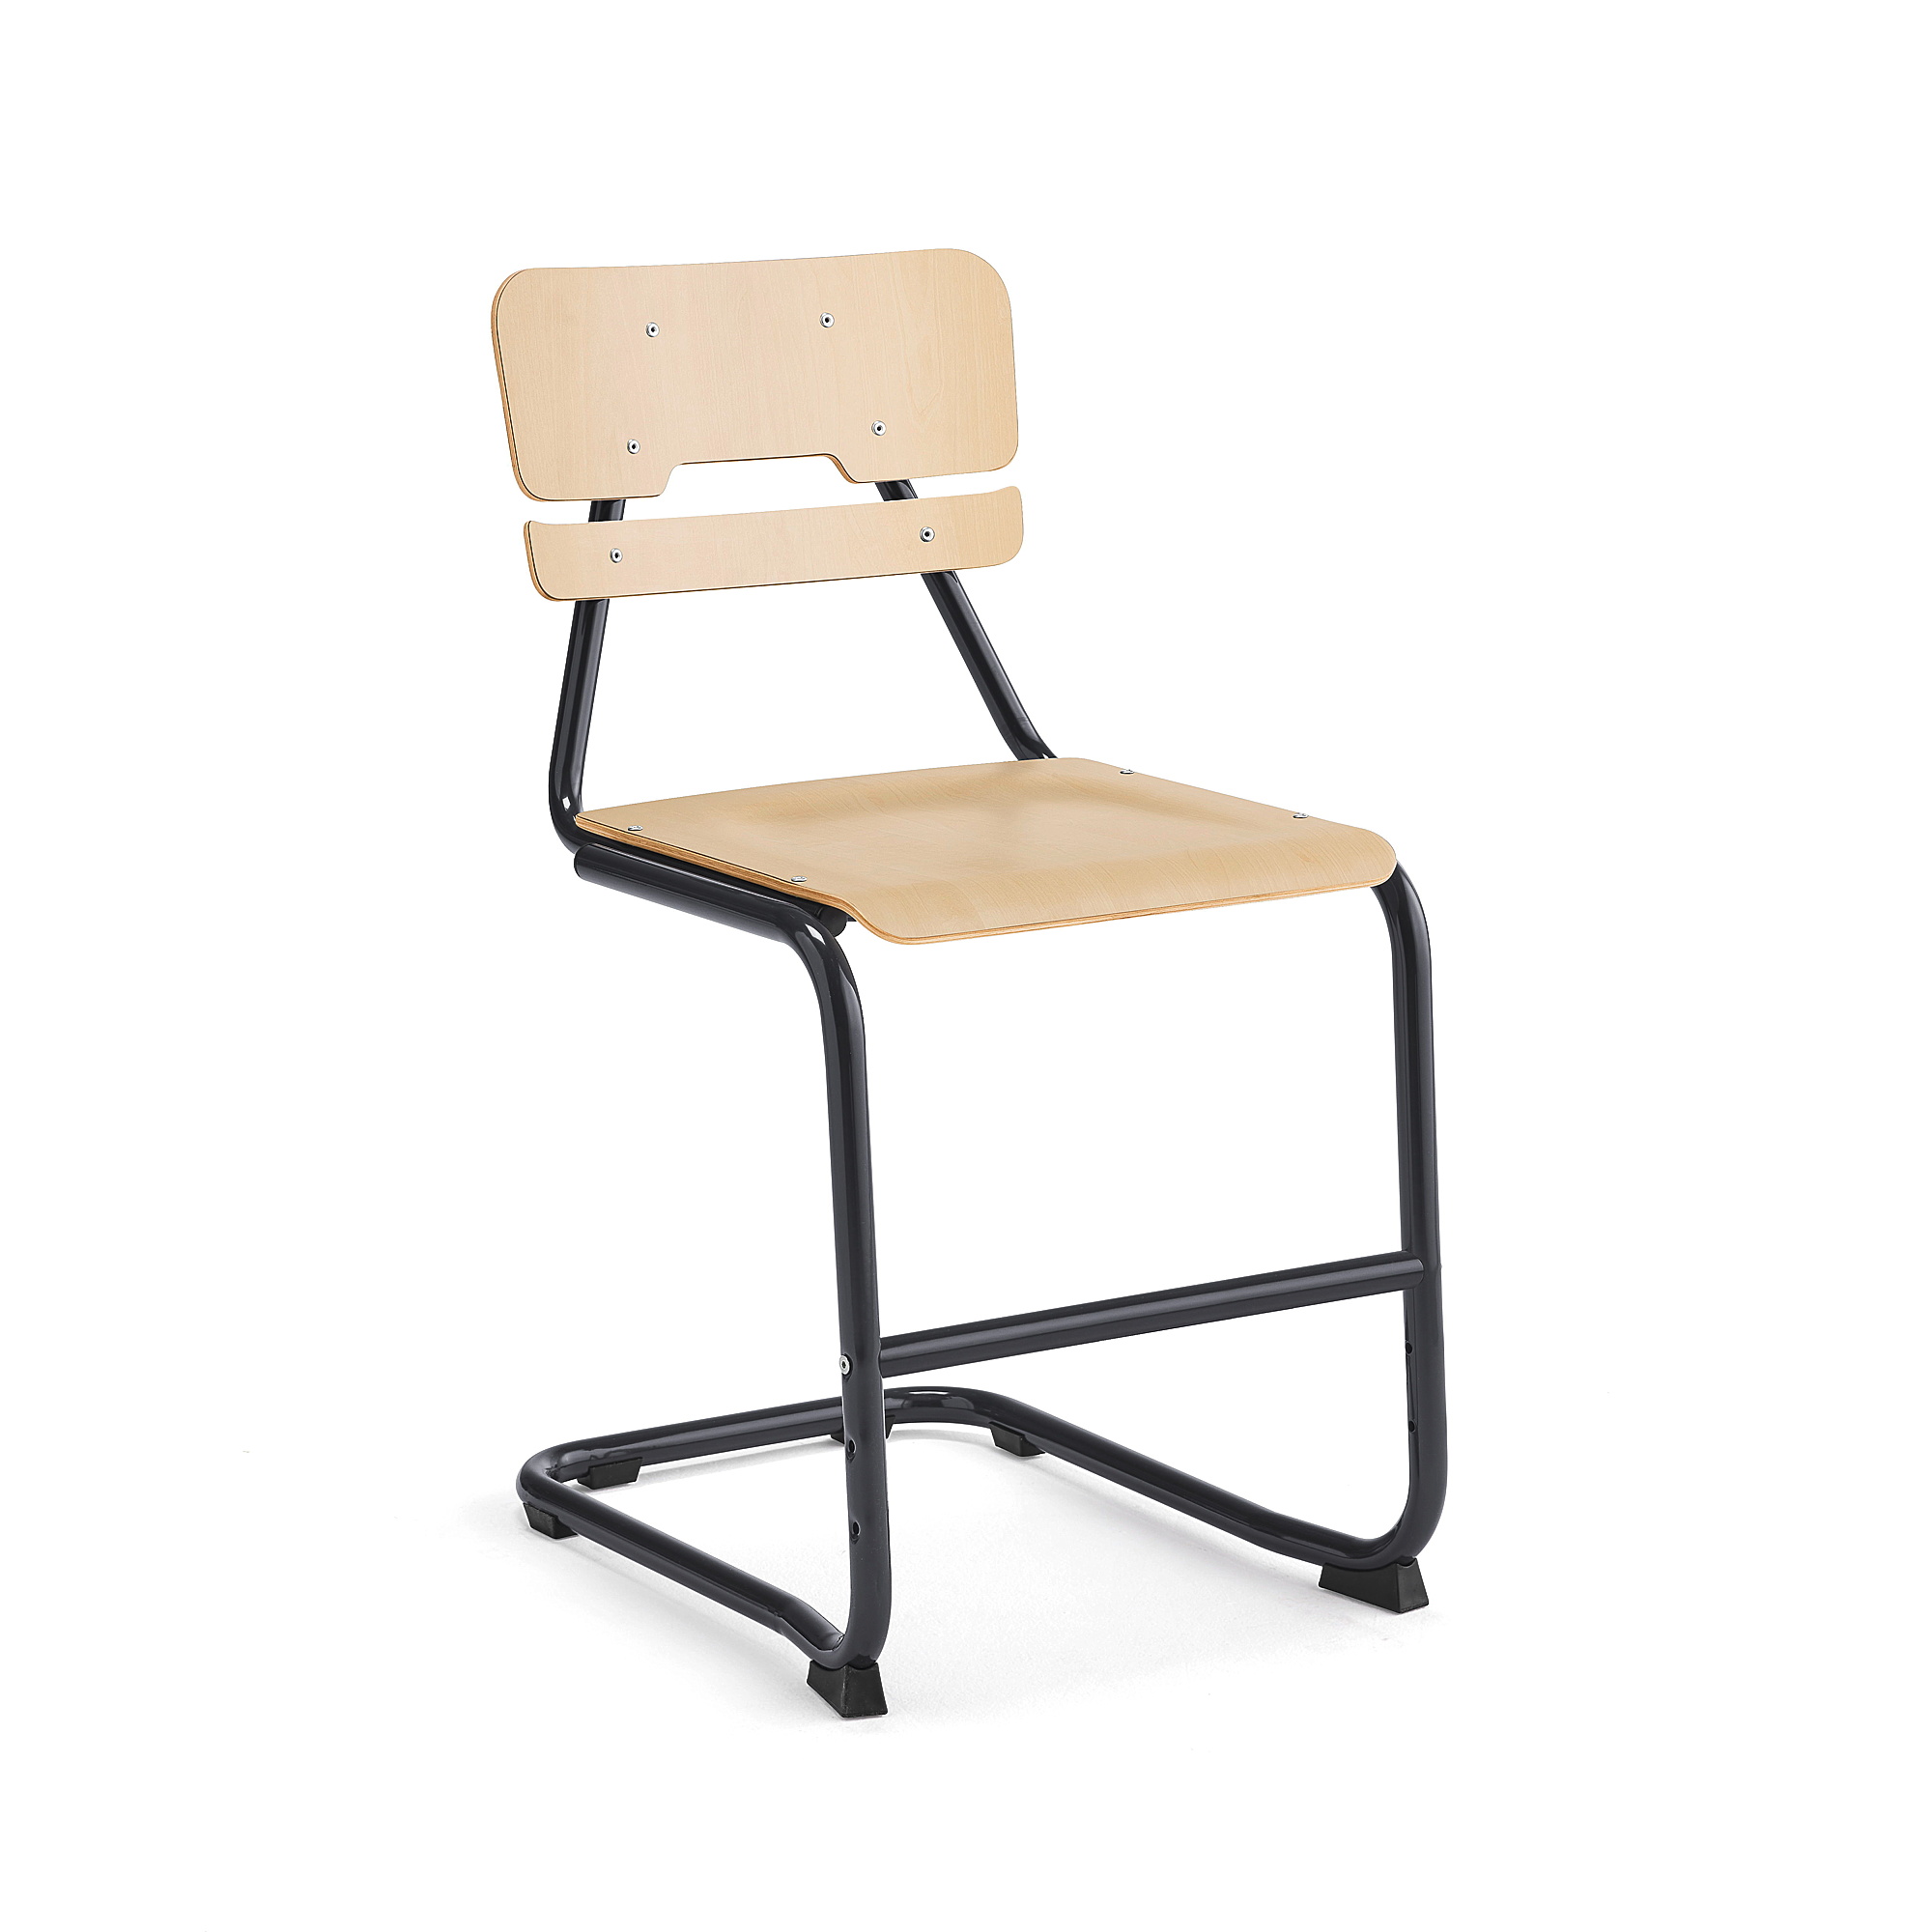 Školní židle LEGERE II, výška 500 mm, antracitově šedá, bříza